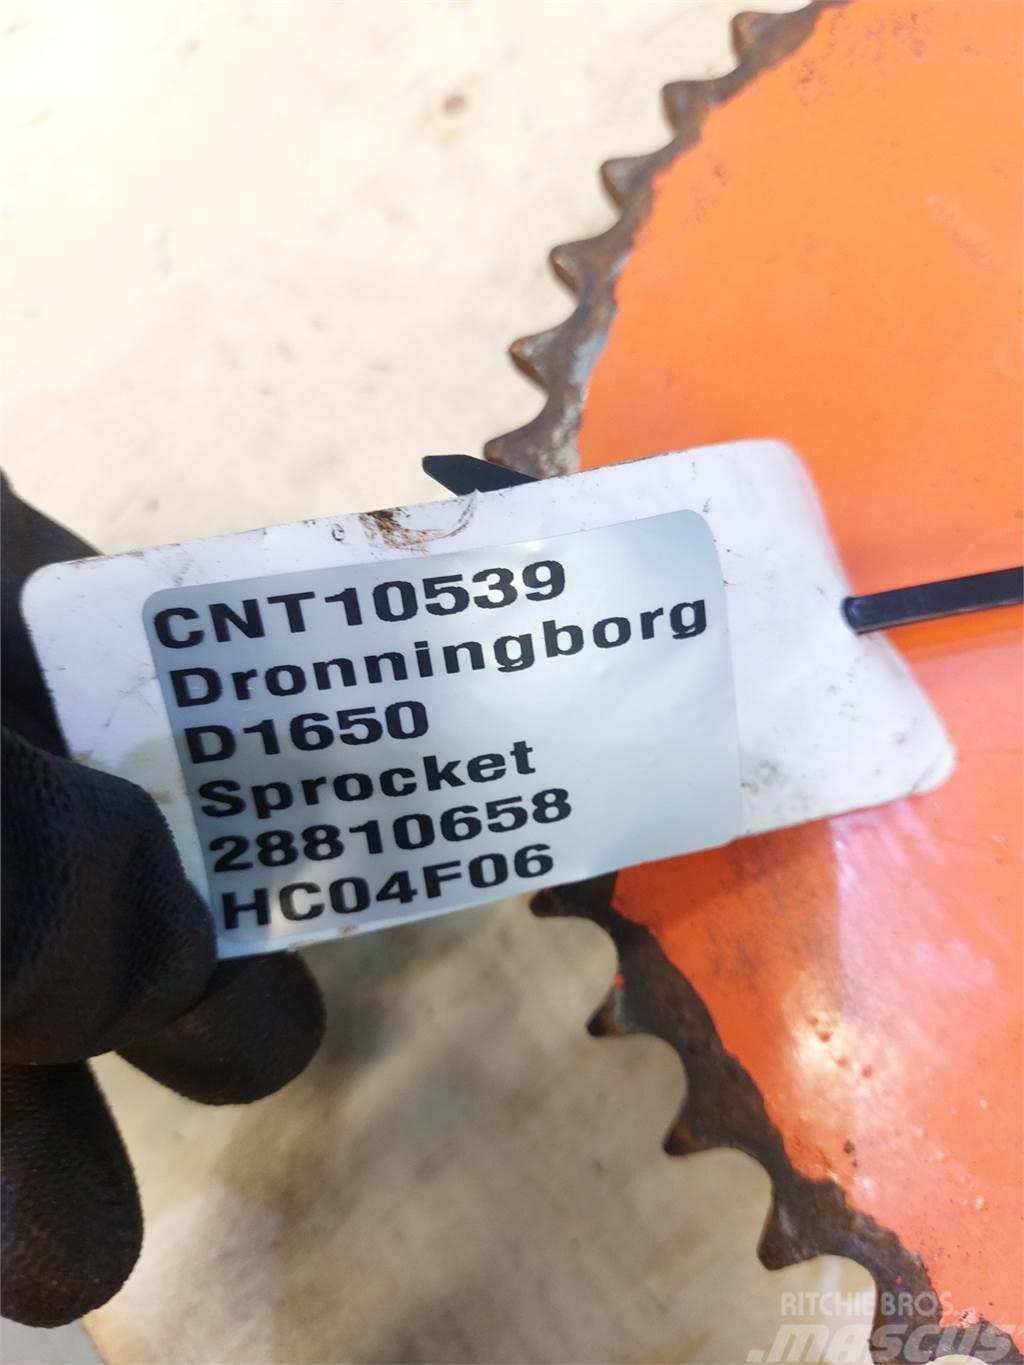 Dronningborg D1650 Ostali poljoprivredni strojevi